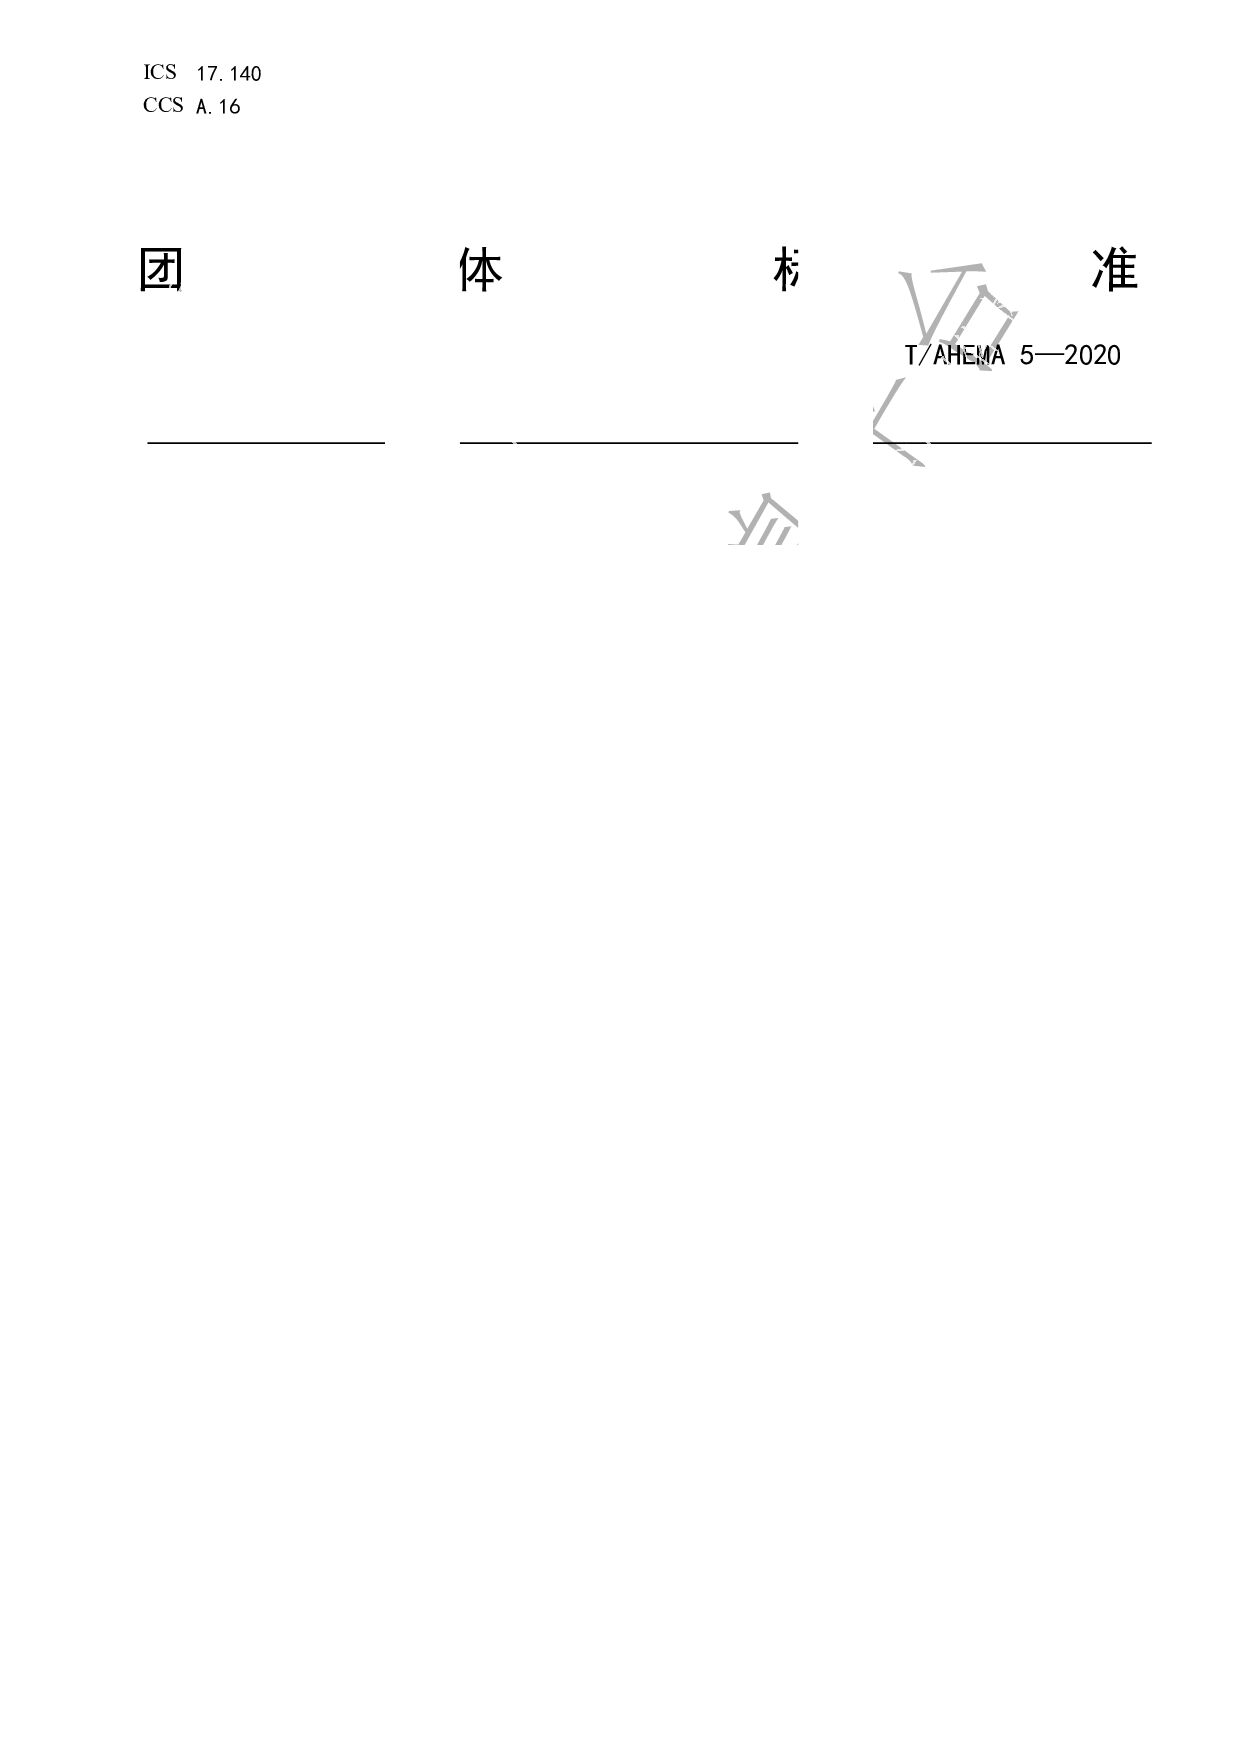 T/AHEMA 5-2020封面图